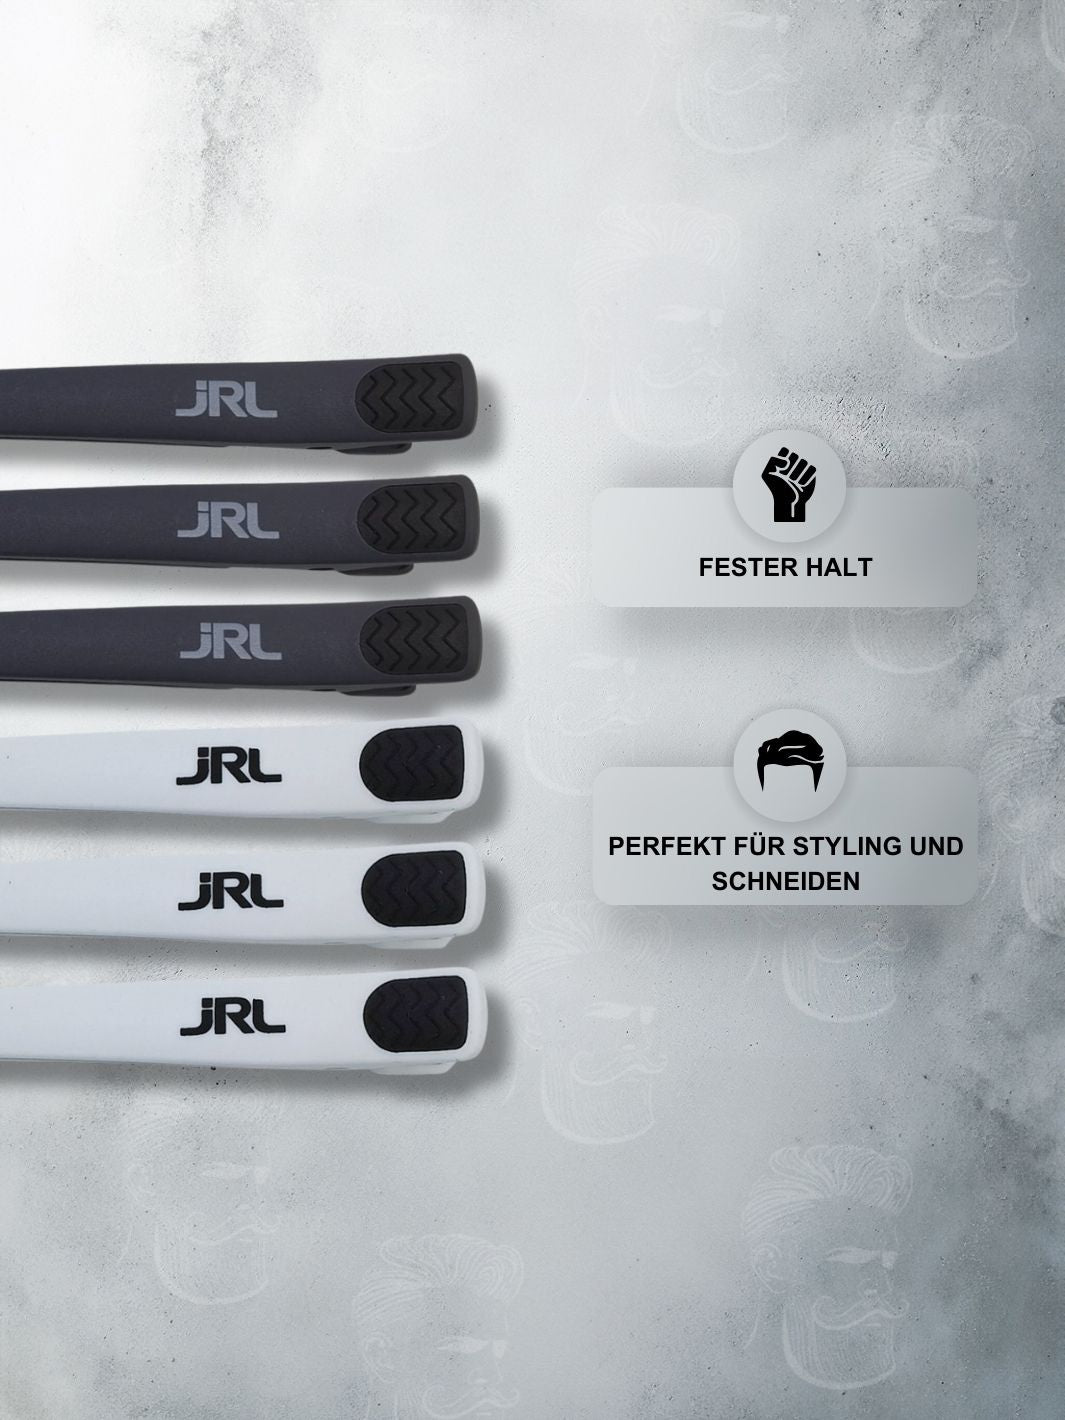 Professionelle JRL Haarclips in Schwarz und Weiß für starken Halt, ideal zum Stylen und Schneiden von Haaren.